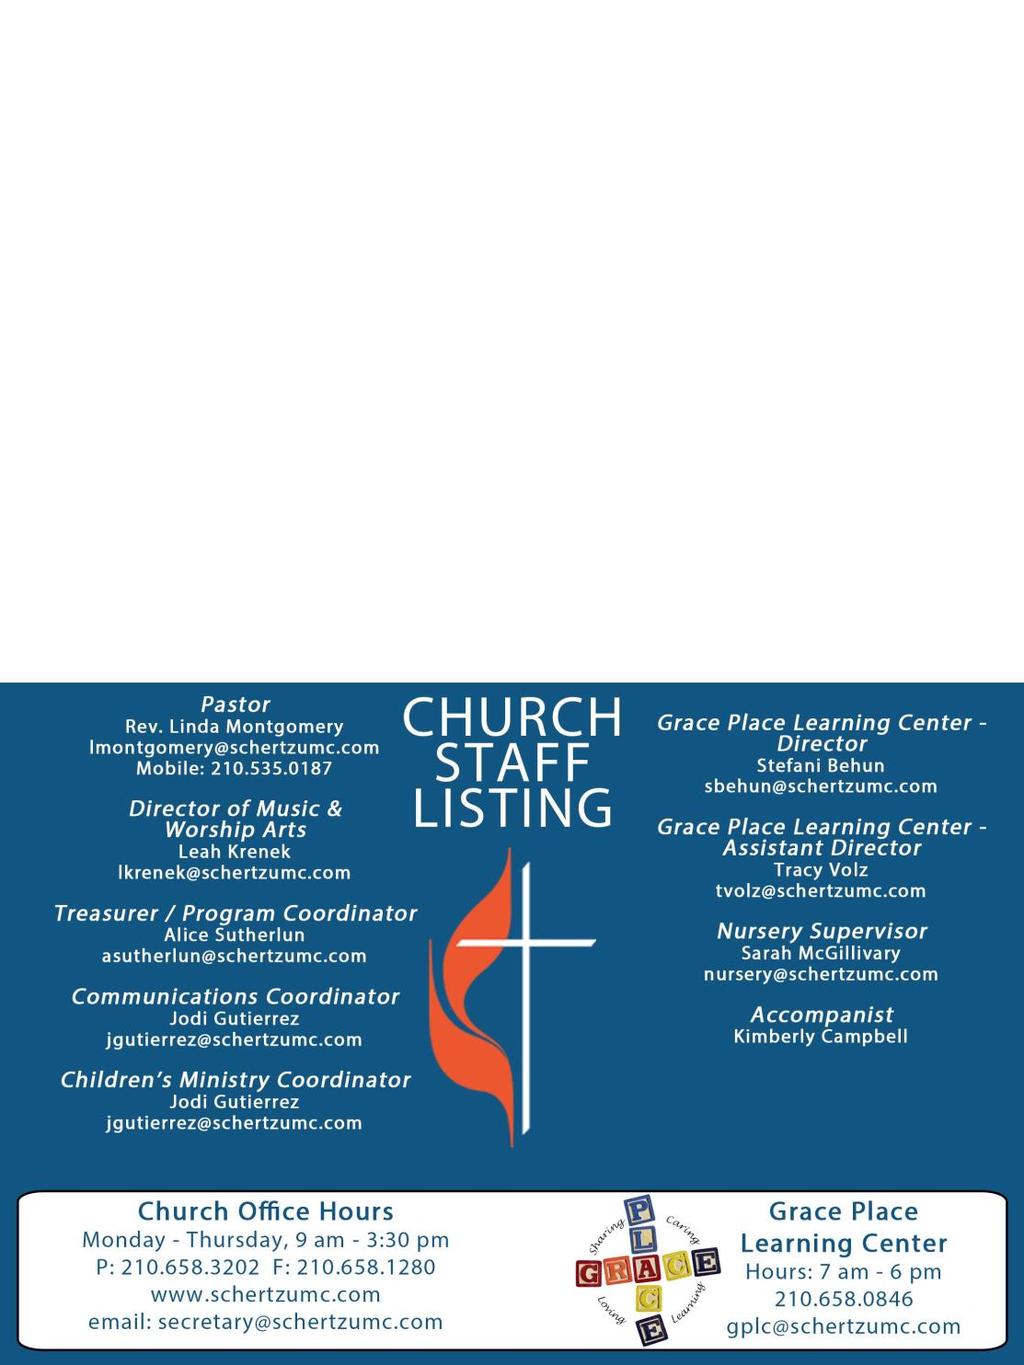 Schertz United Methodist Church 3460 Roy Richard Drive Schertz, Texas 78154 This monthly newsletter is a publication by Schertz United Methodist Church in Schertz, TX.